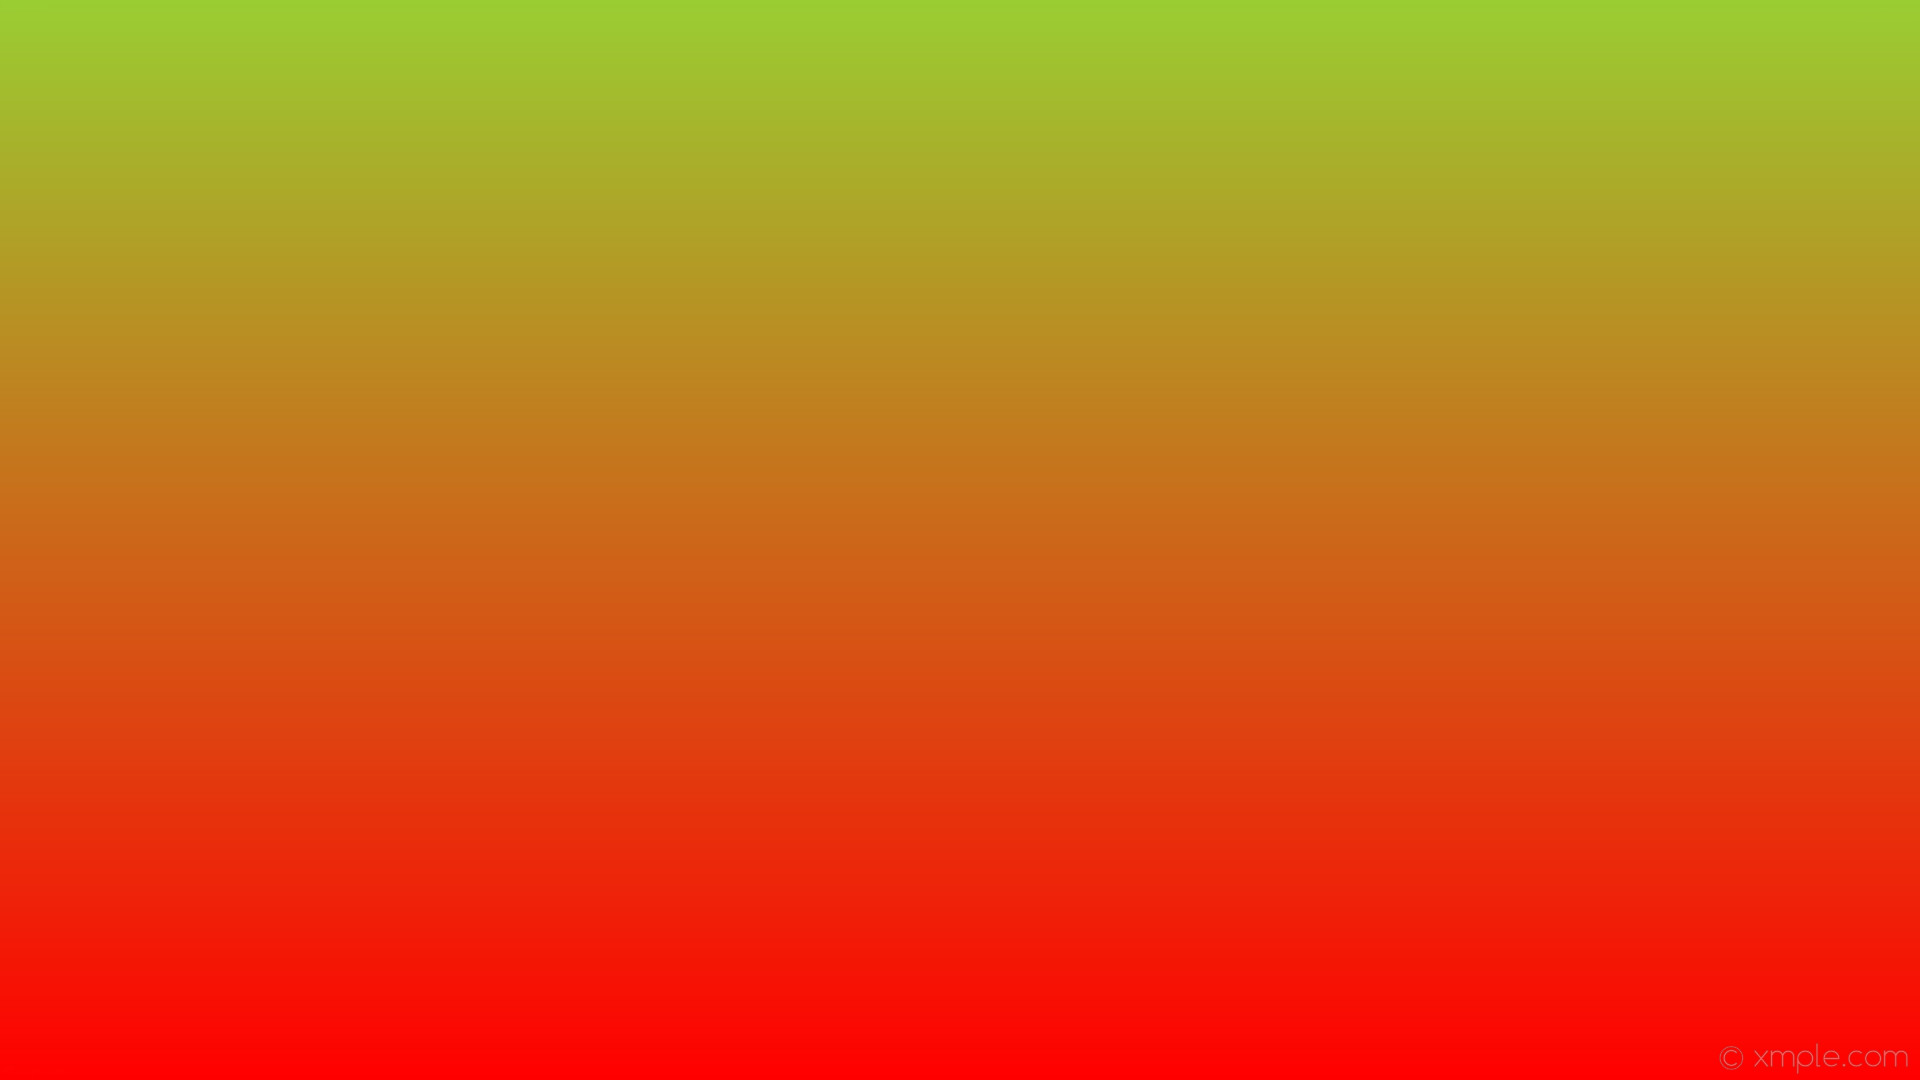 papel tapiz verde rojo,verde,naranja,amarillo,rojo,fuente